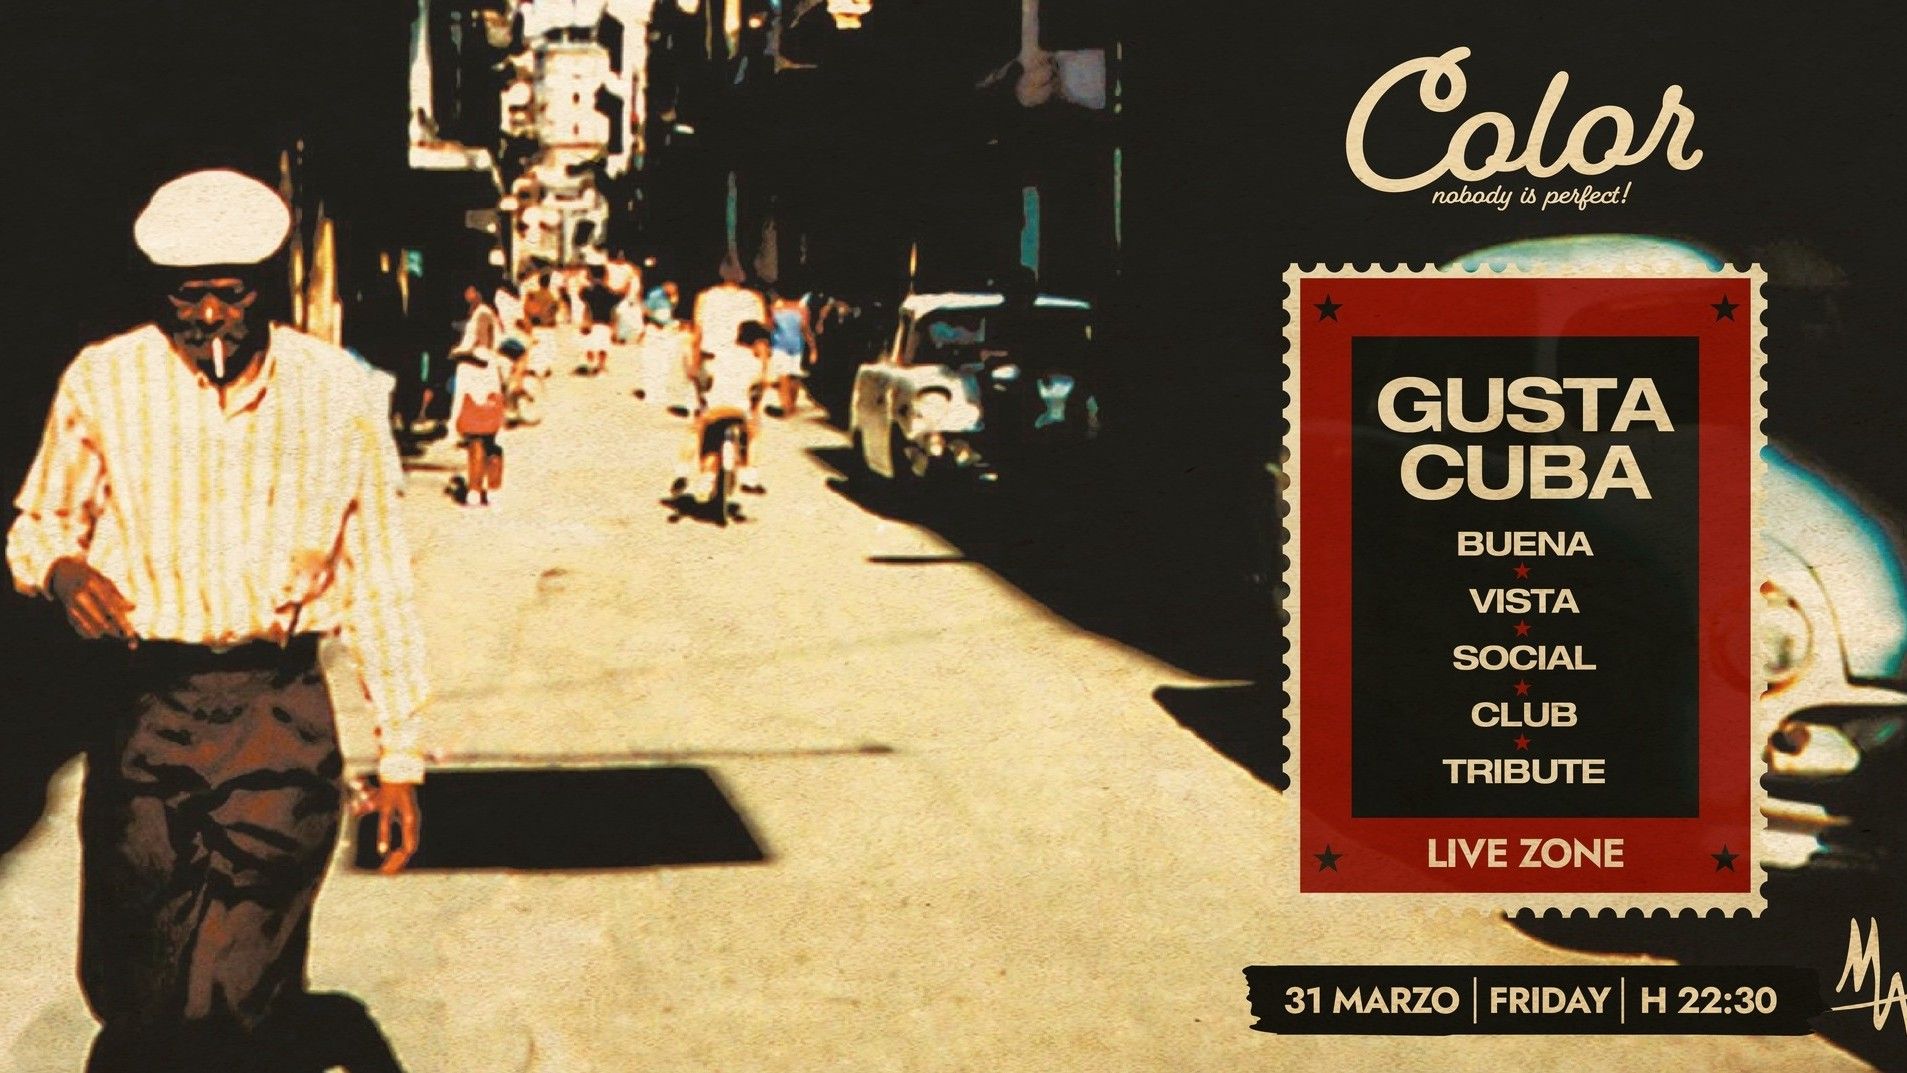 Gusta Cuba - Buena Vista Social Club Tribute